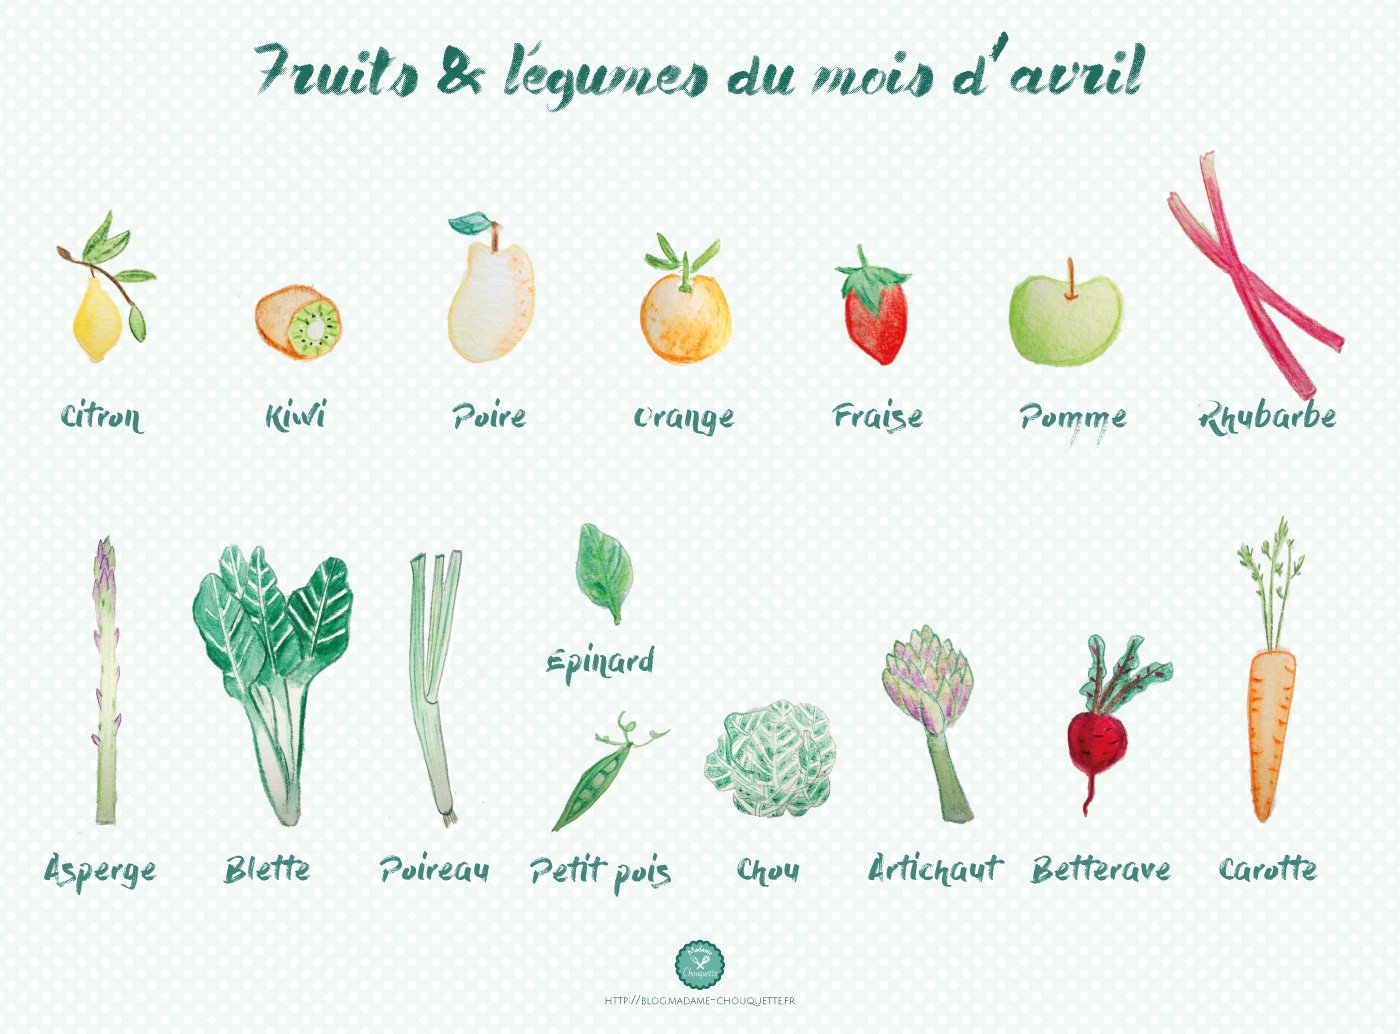 Les fruits et les légumes d’avril | Madame Chouquette